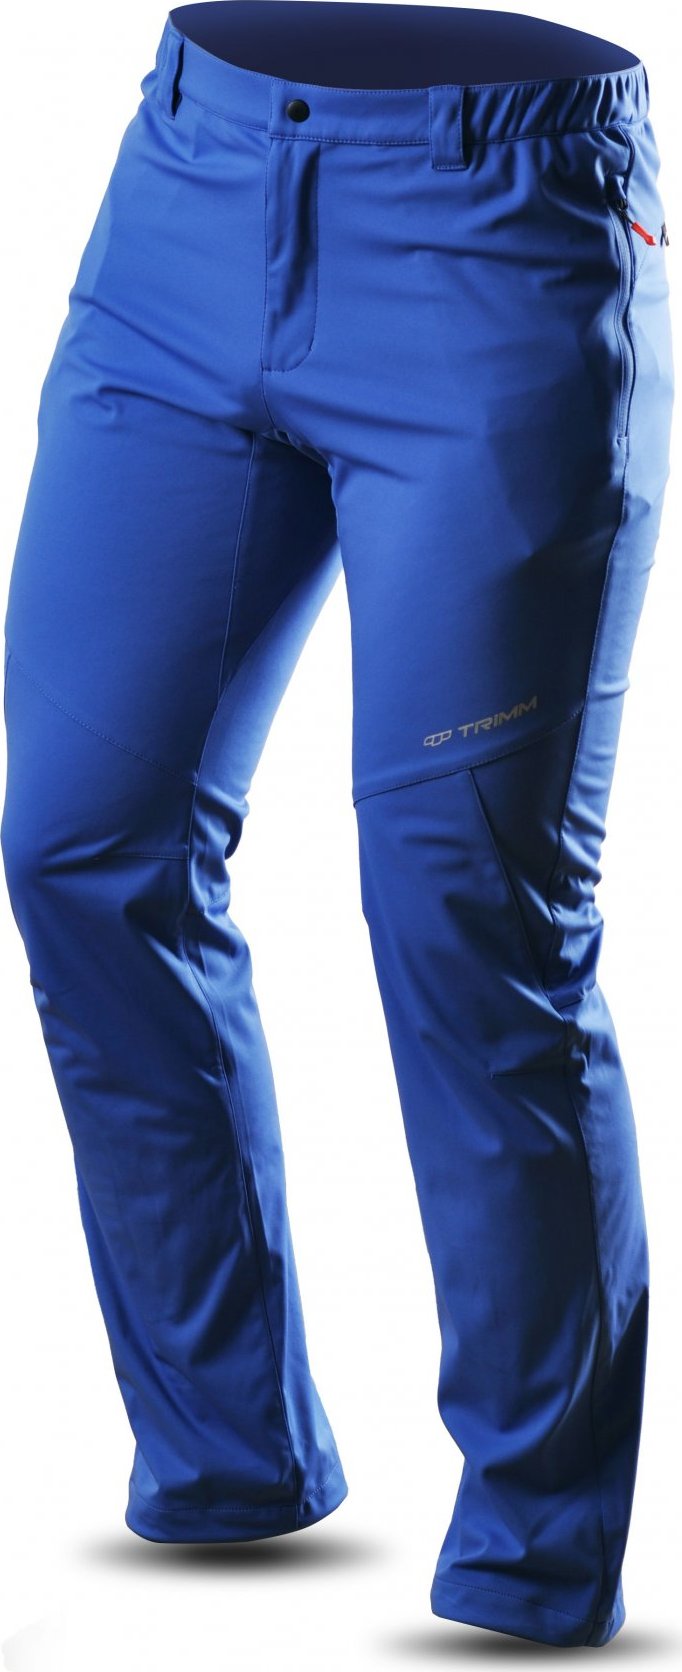 Pánské sportovní kalhoty TRIMM Roche Pants jeans blue Velikost: M, Barva: jeans blue